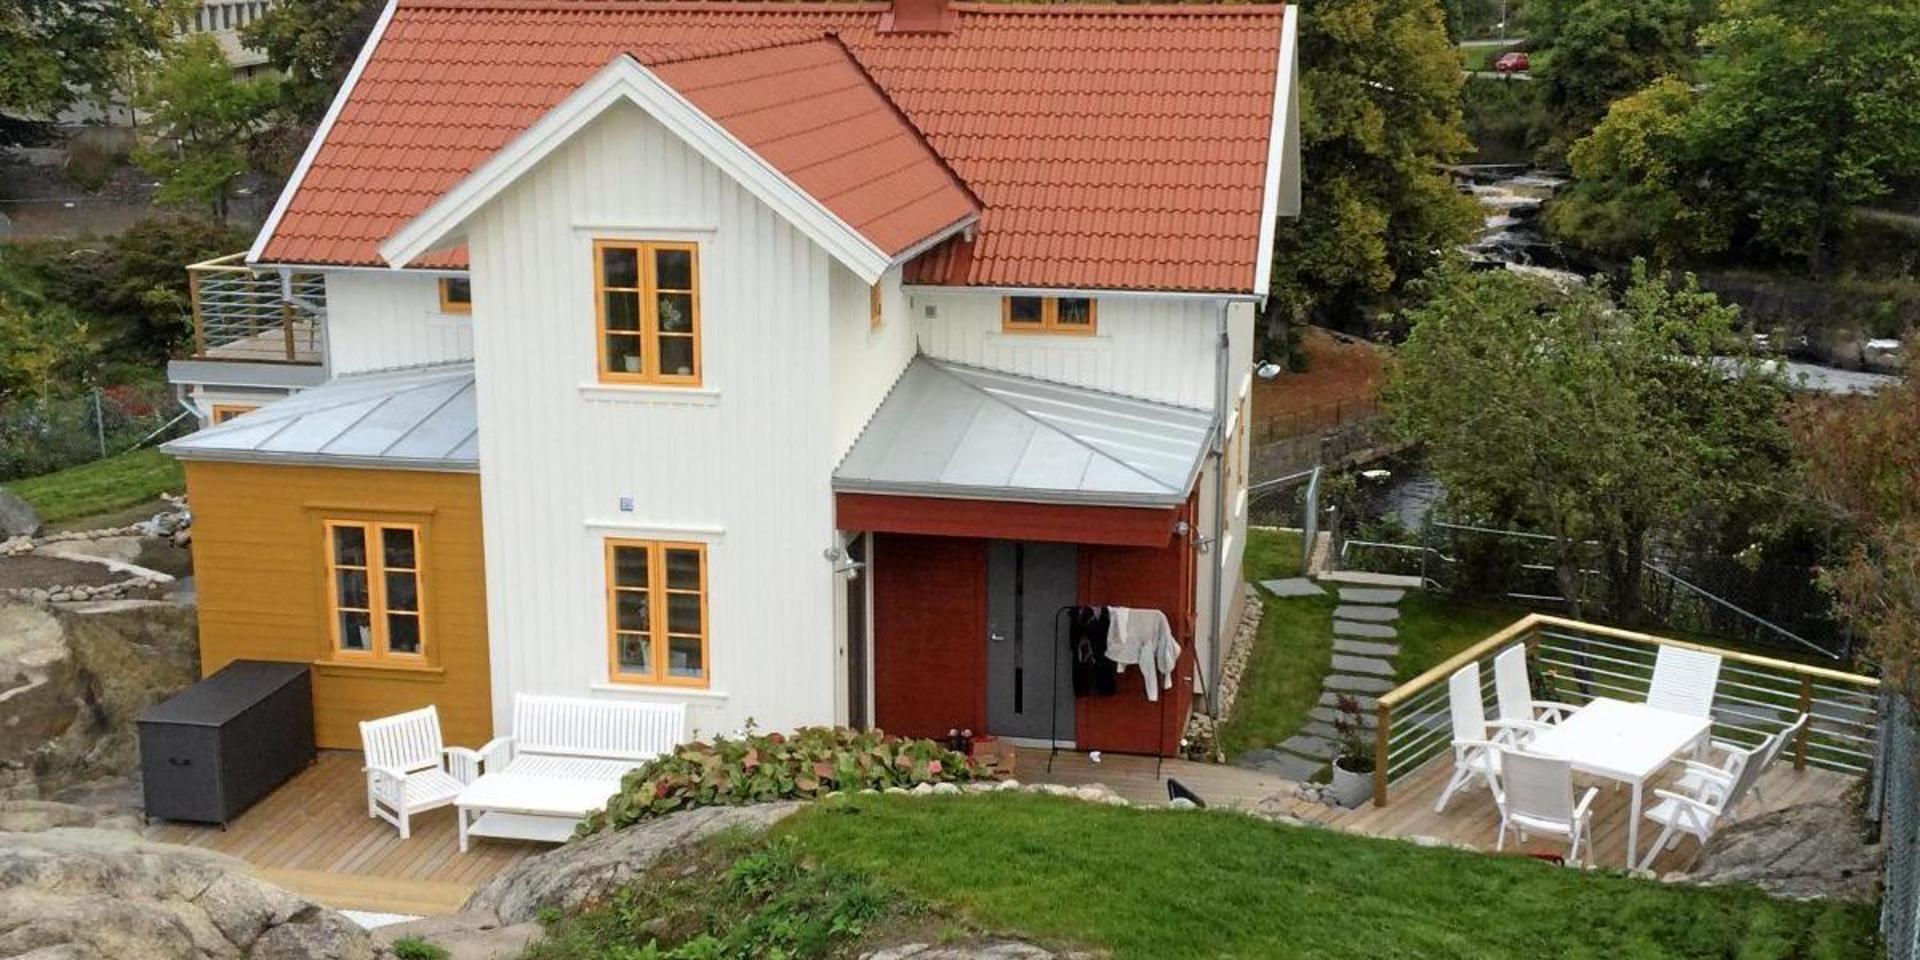 Det här huset på Asplundsgatan fick Byggnadsvårdspriset för några år sedan.  (Arkivbild)